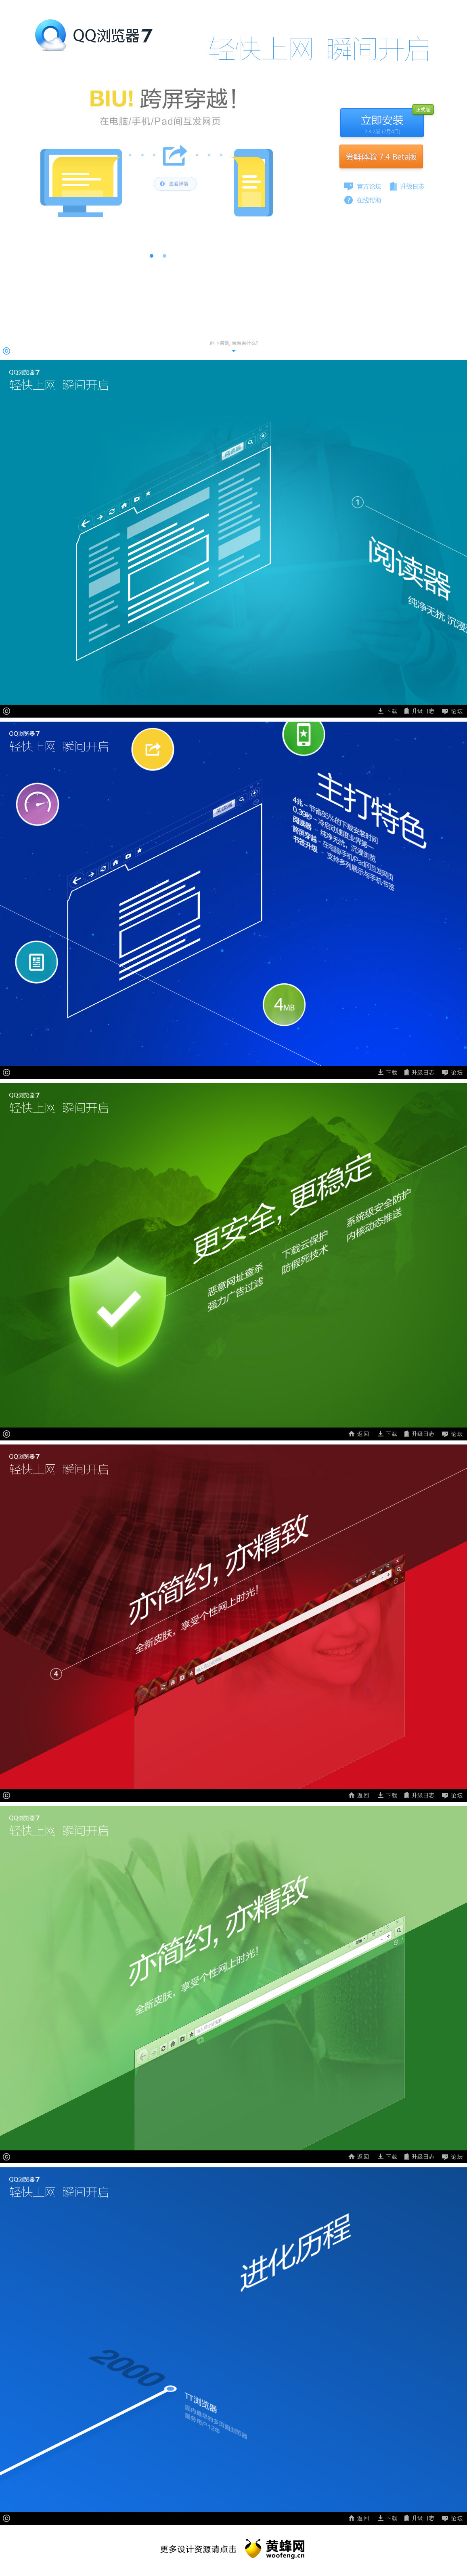 QQ浏览器产品官方网站，来源自黄蜂网https://woofeng.cn/